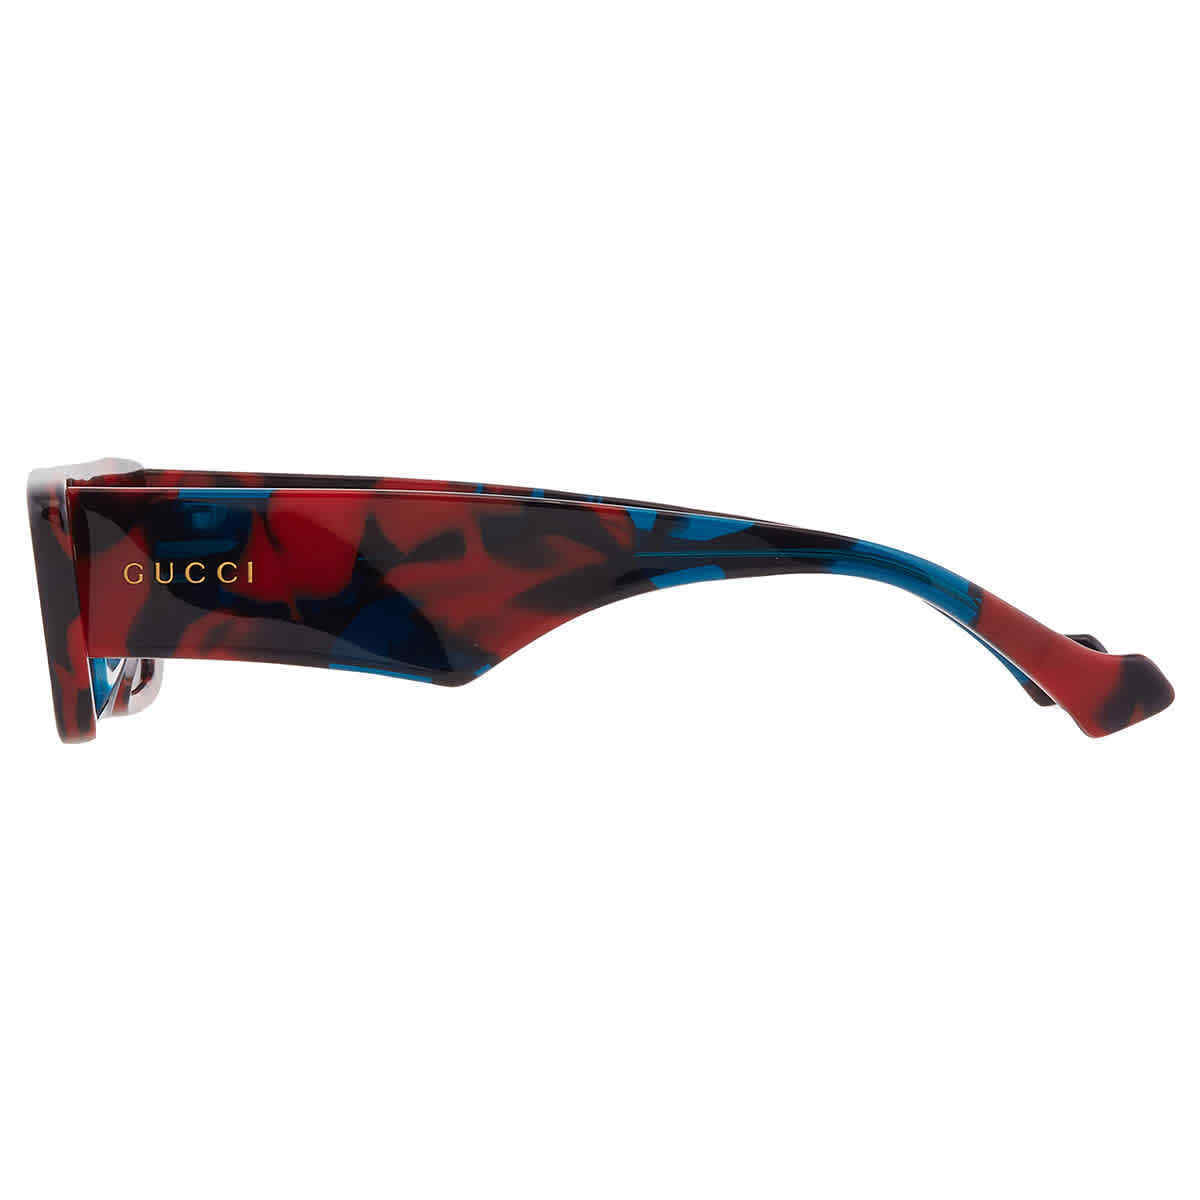 Gucci GG1331S-007 54mm New Sunglasses